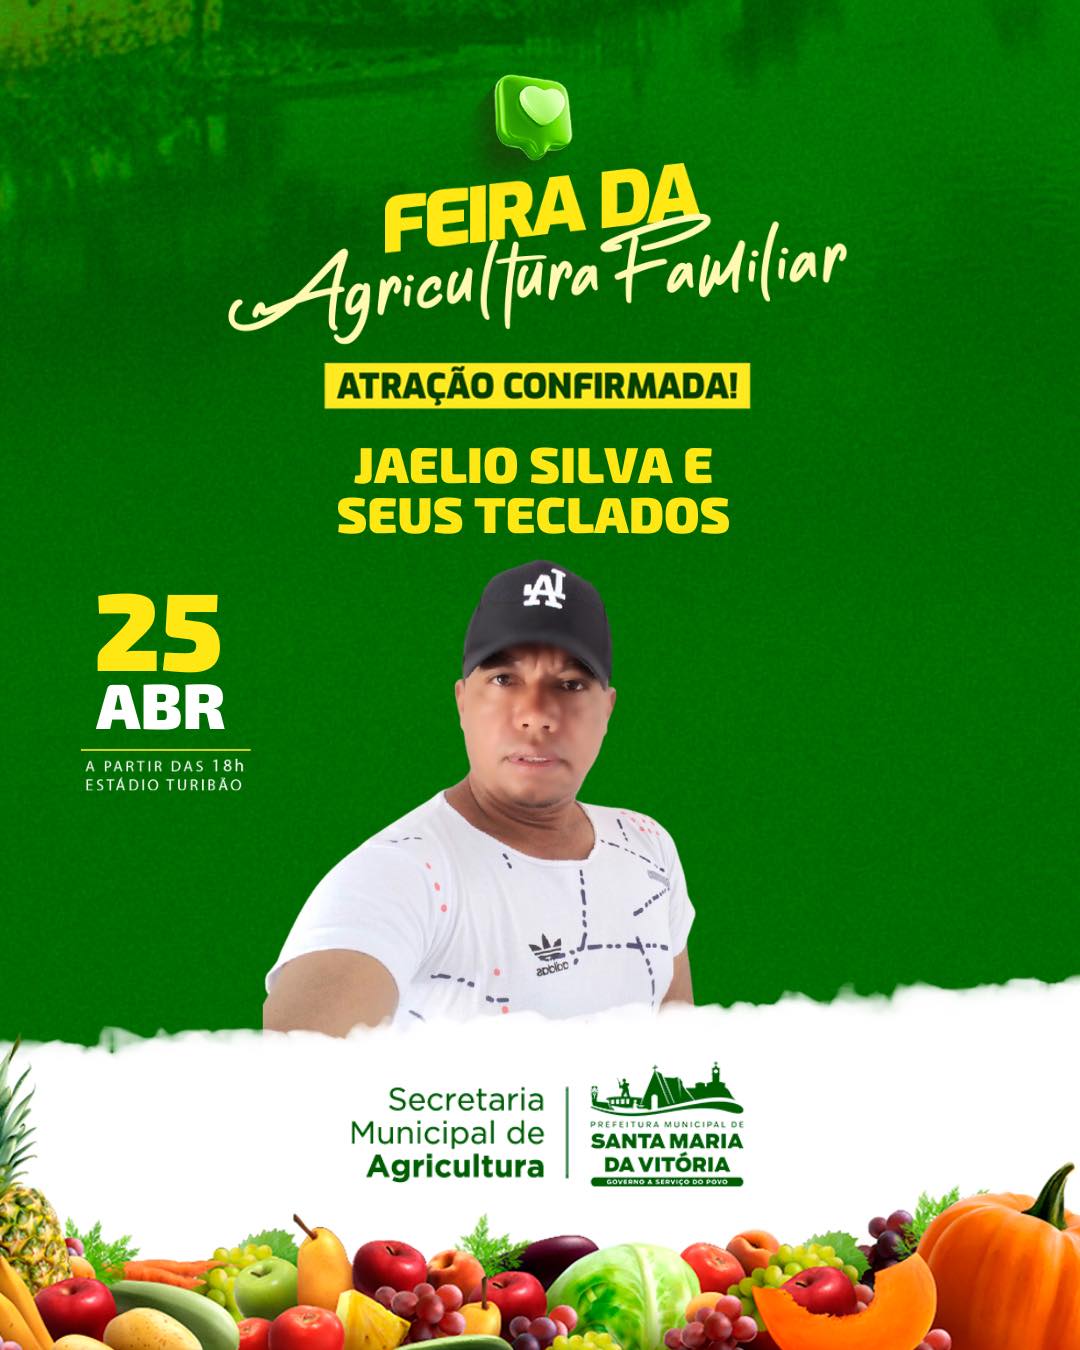 Jaelio Silva e seus teclados vai colocar todo mundo pra dançar no dia 25 de abril, quinta-feira, a partir das 16h, em frente ao estádio Turibão